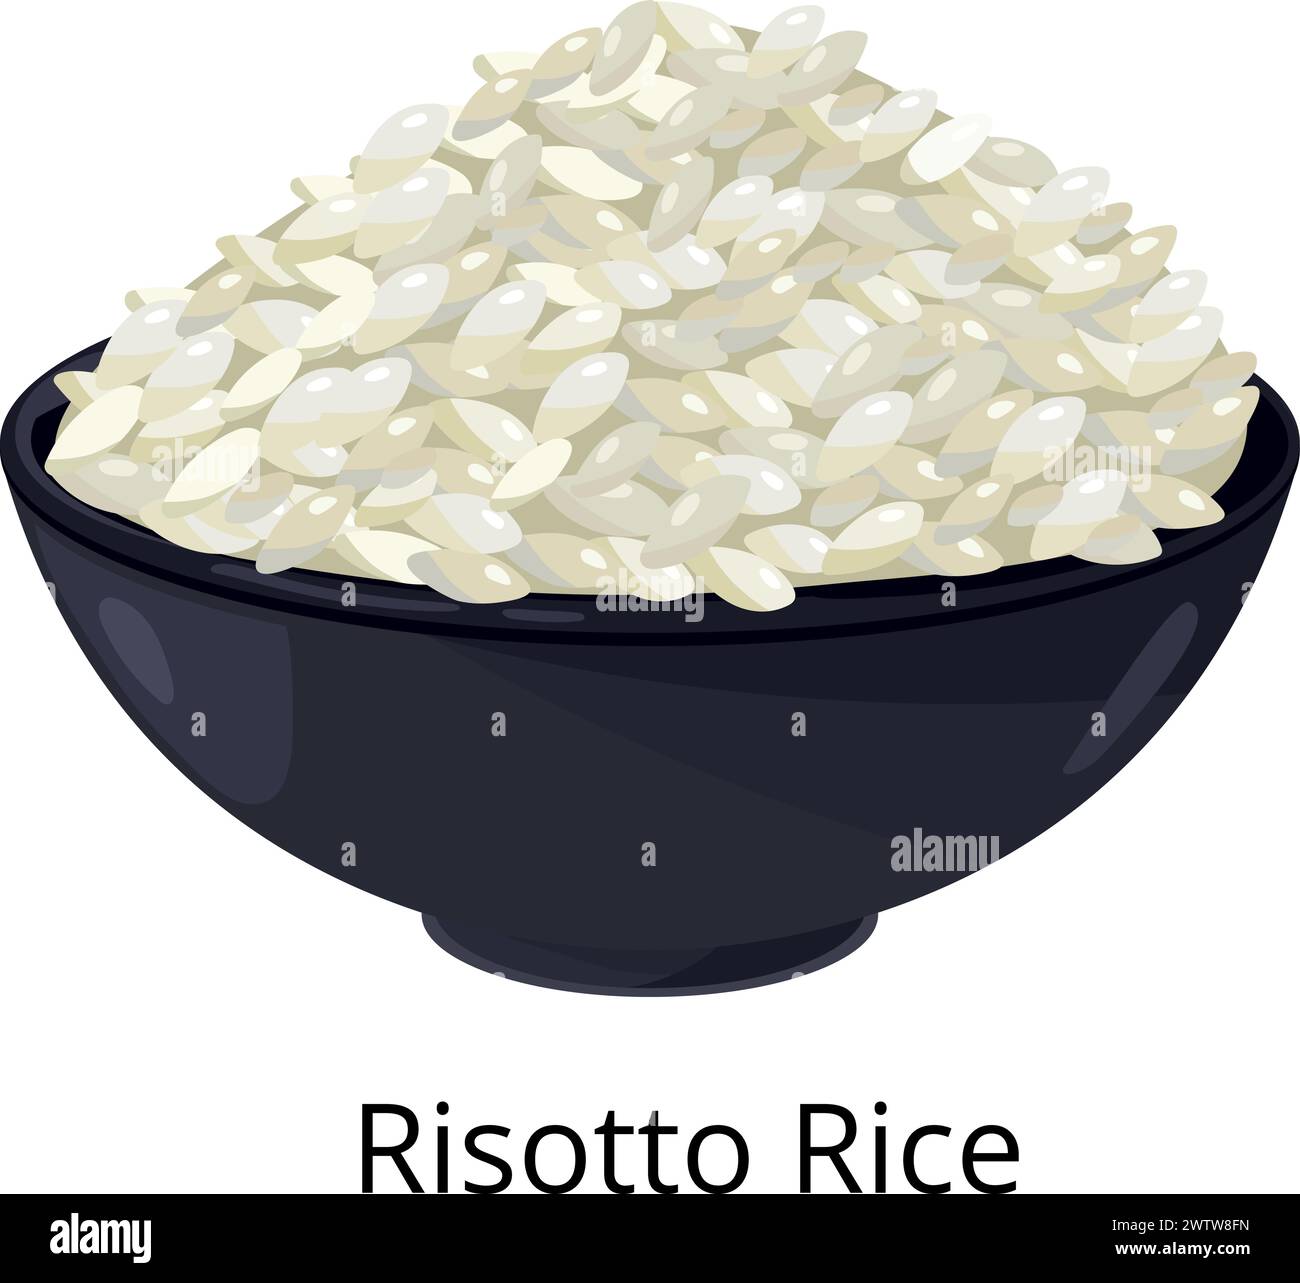 Risotto rice dish. White grain bowl icon Stock Vector